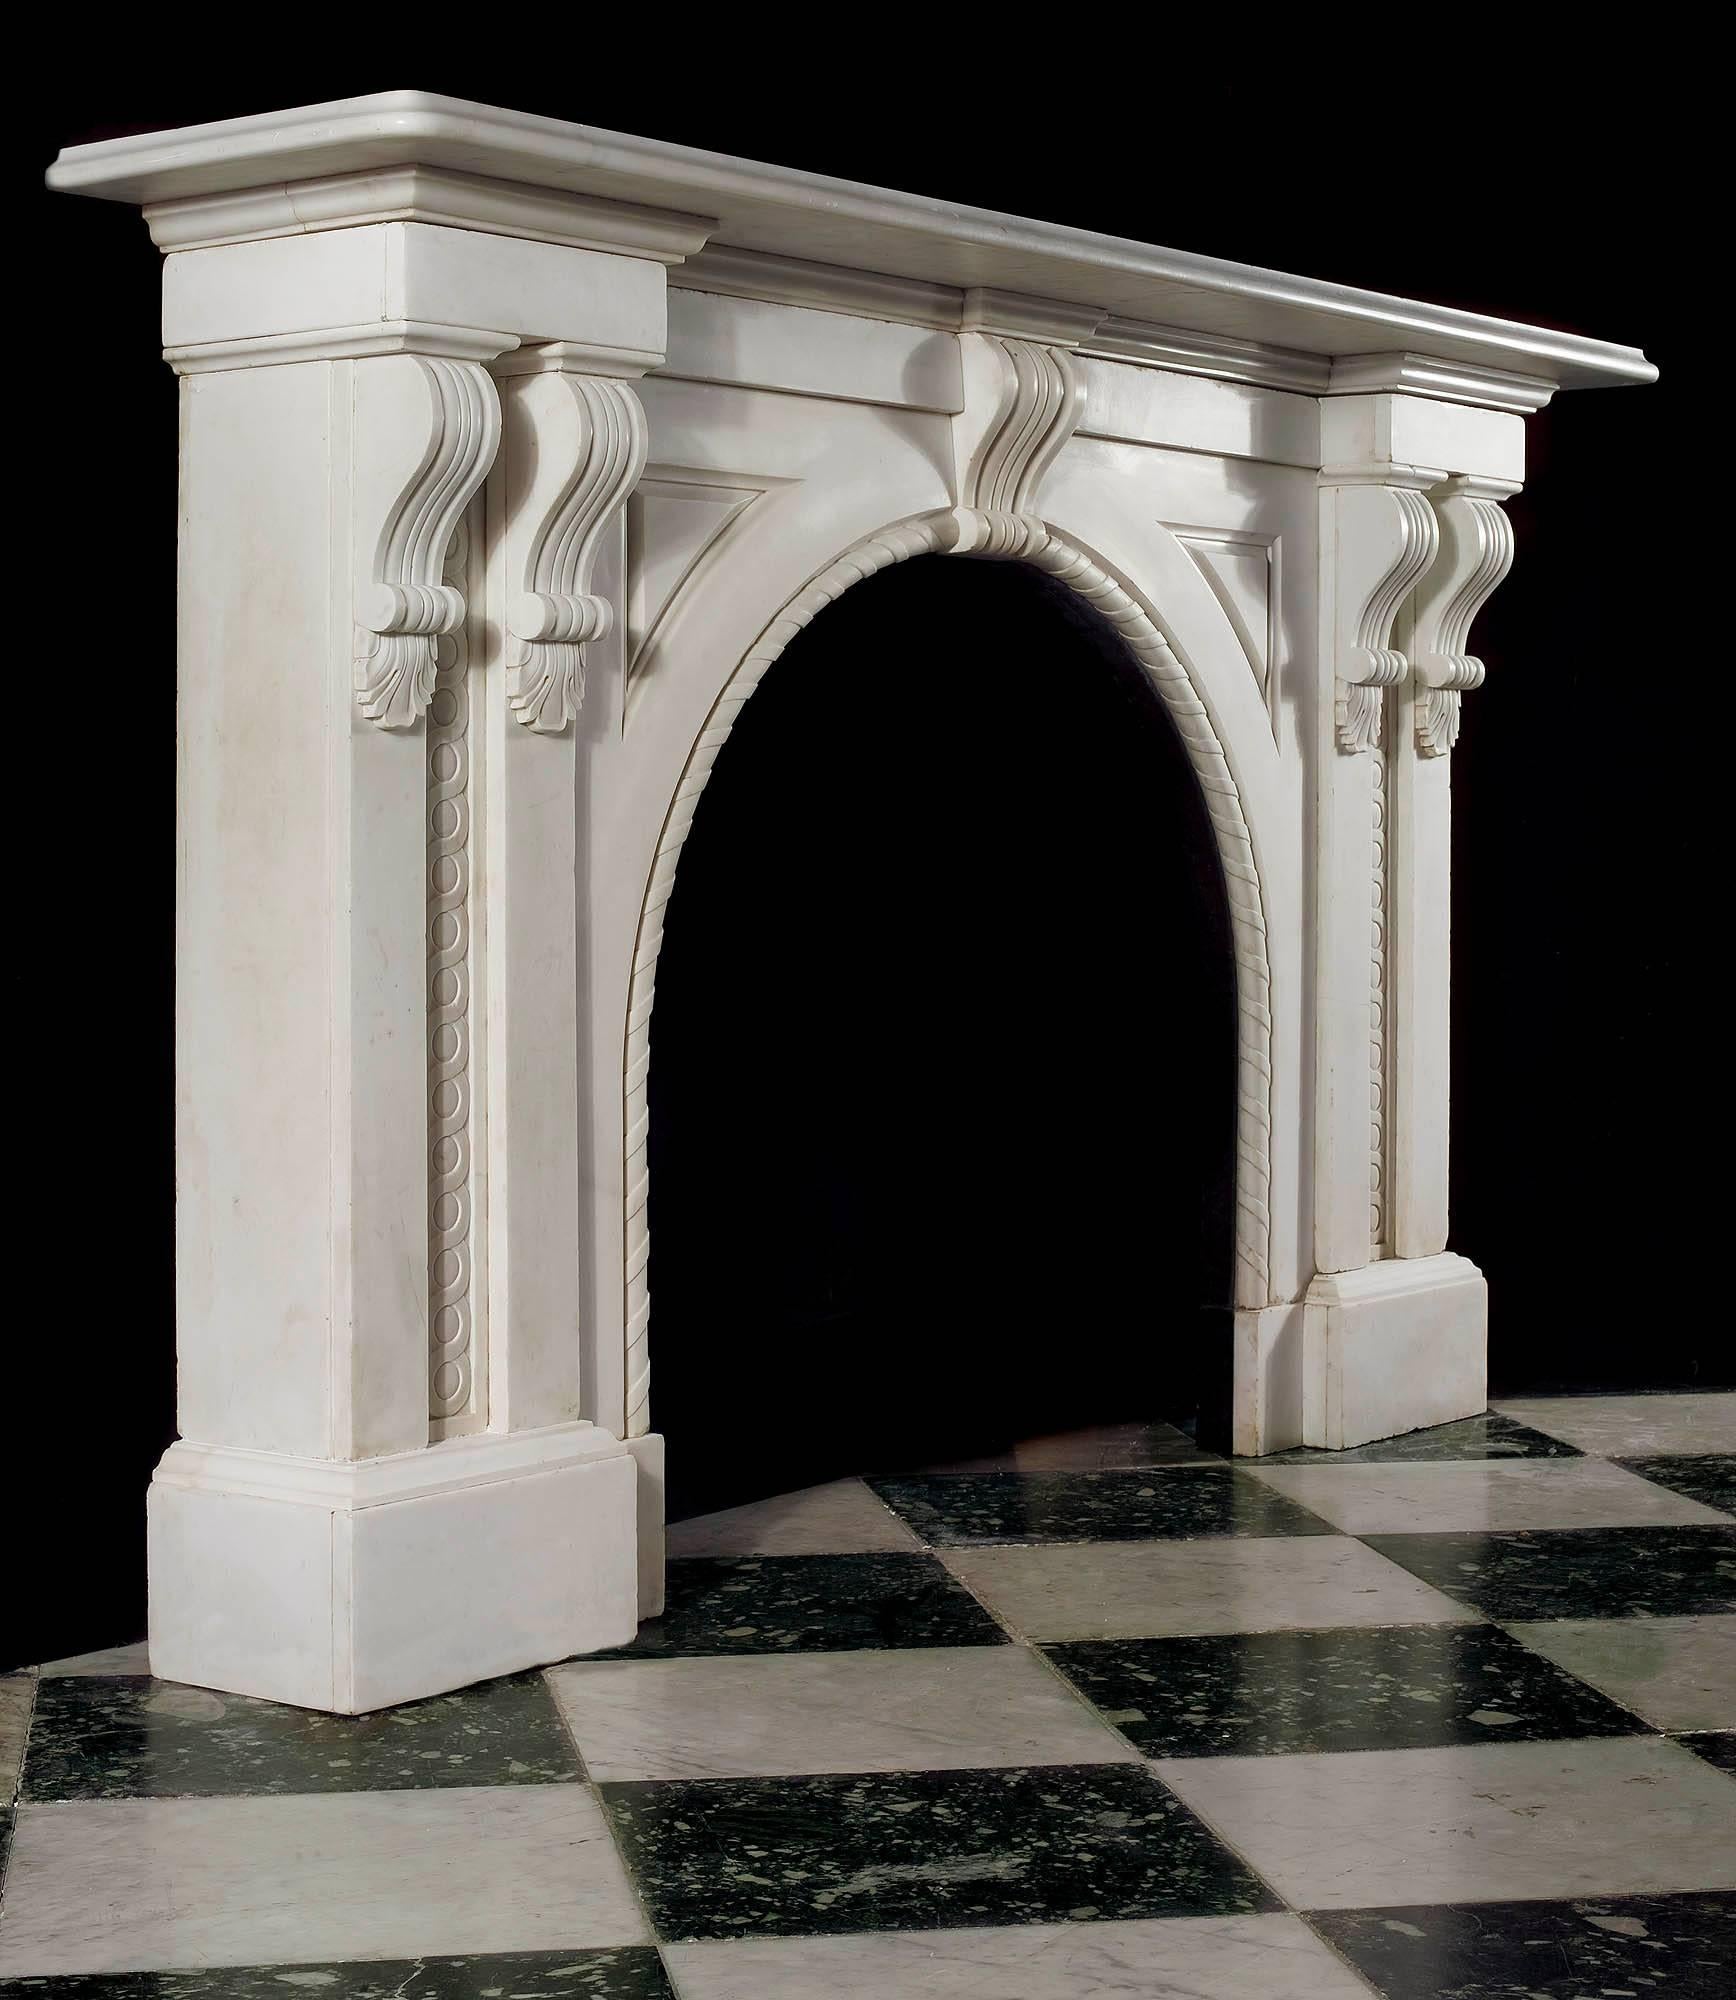 Ein großer und imposanter viktorianischer Gewölbekamin aus weißem, statuarischem Marmor. Das massive, schlicht geformte Regal wird von zwei geschwungenen Kragsteinen getragen, die auf jeder Seite in zwei Pilastern mit geschnitzten Guillochen in den